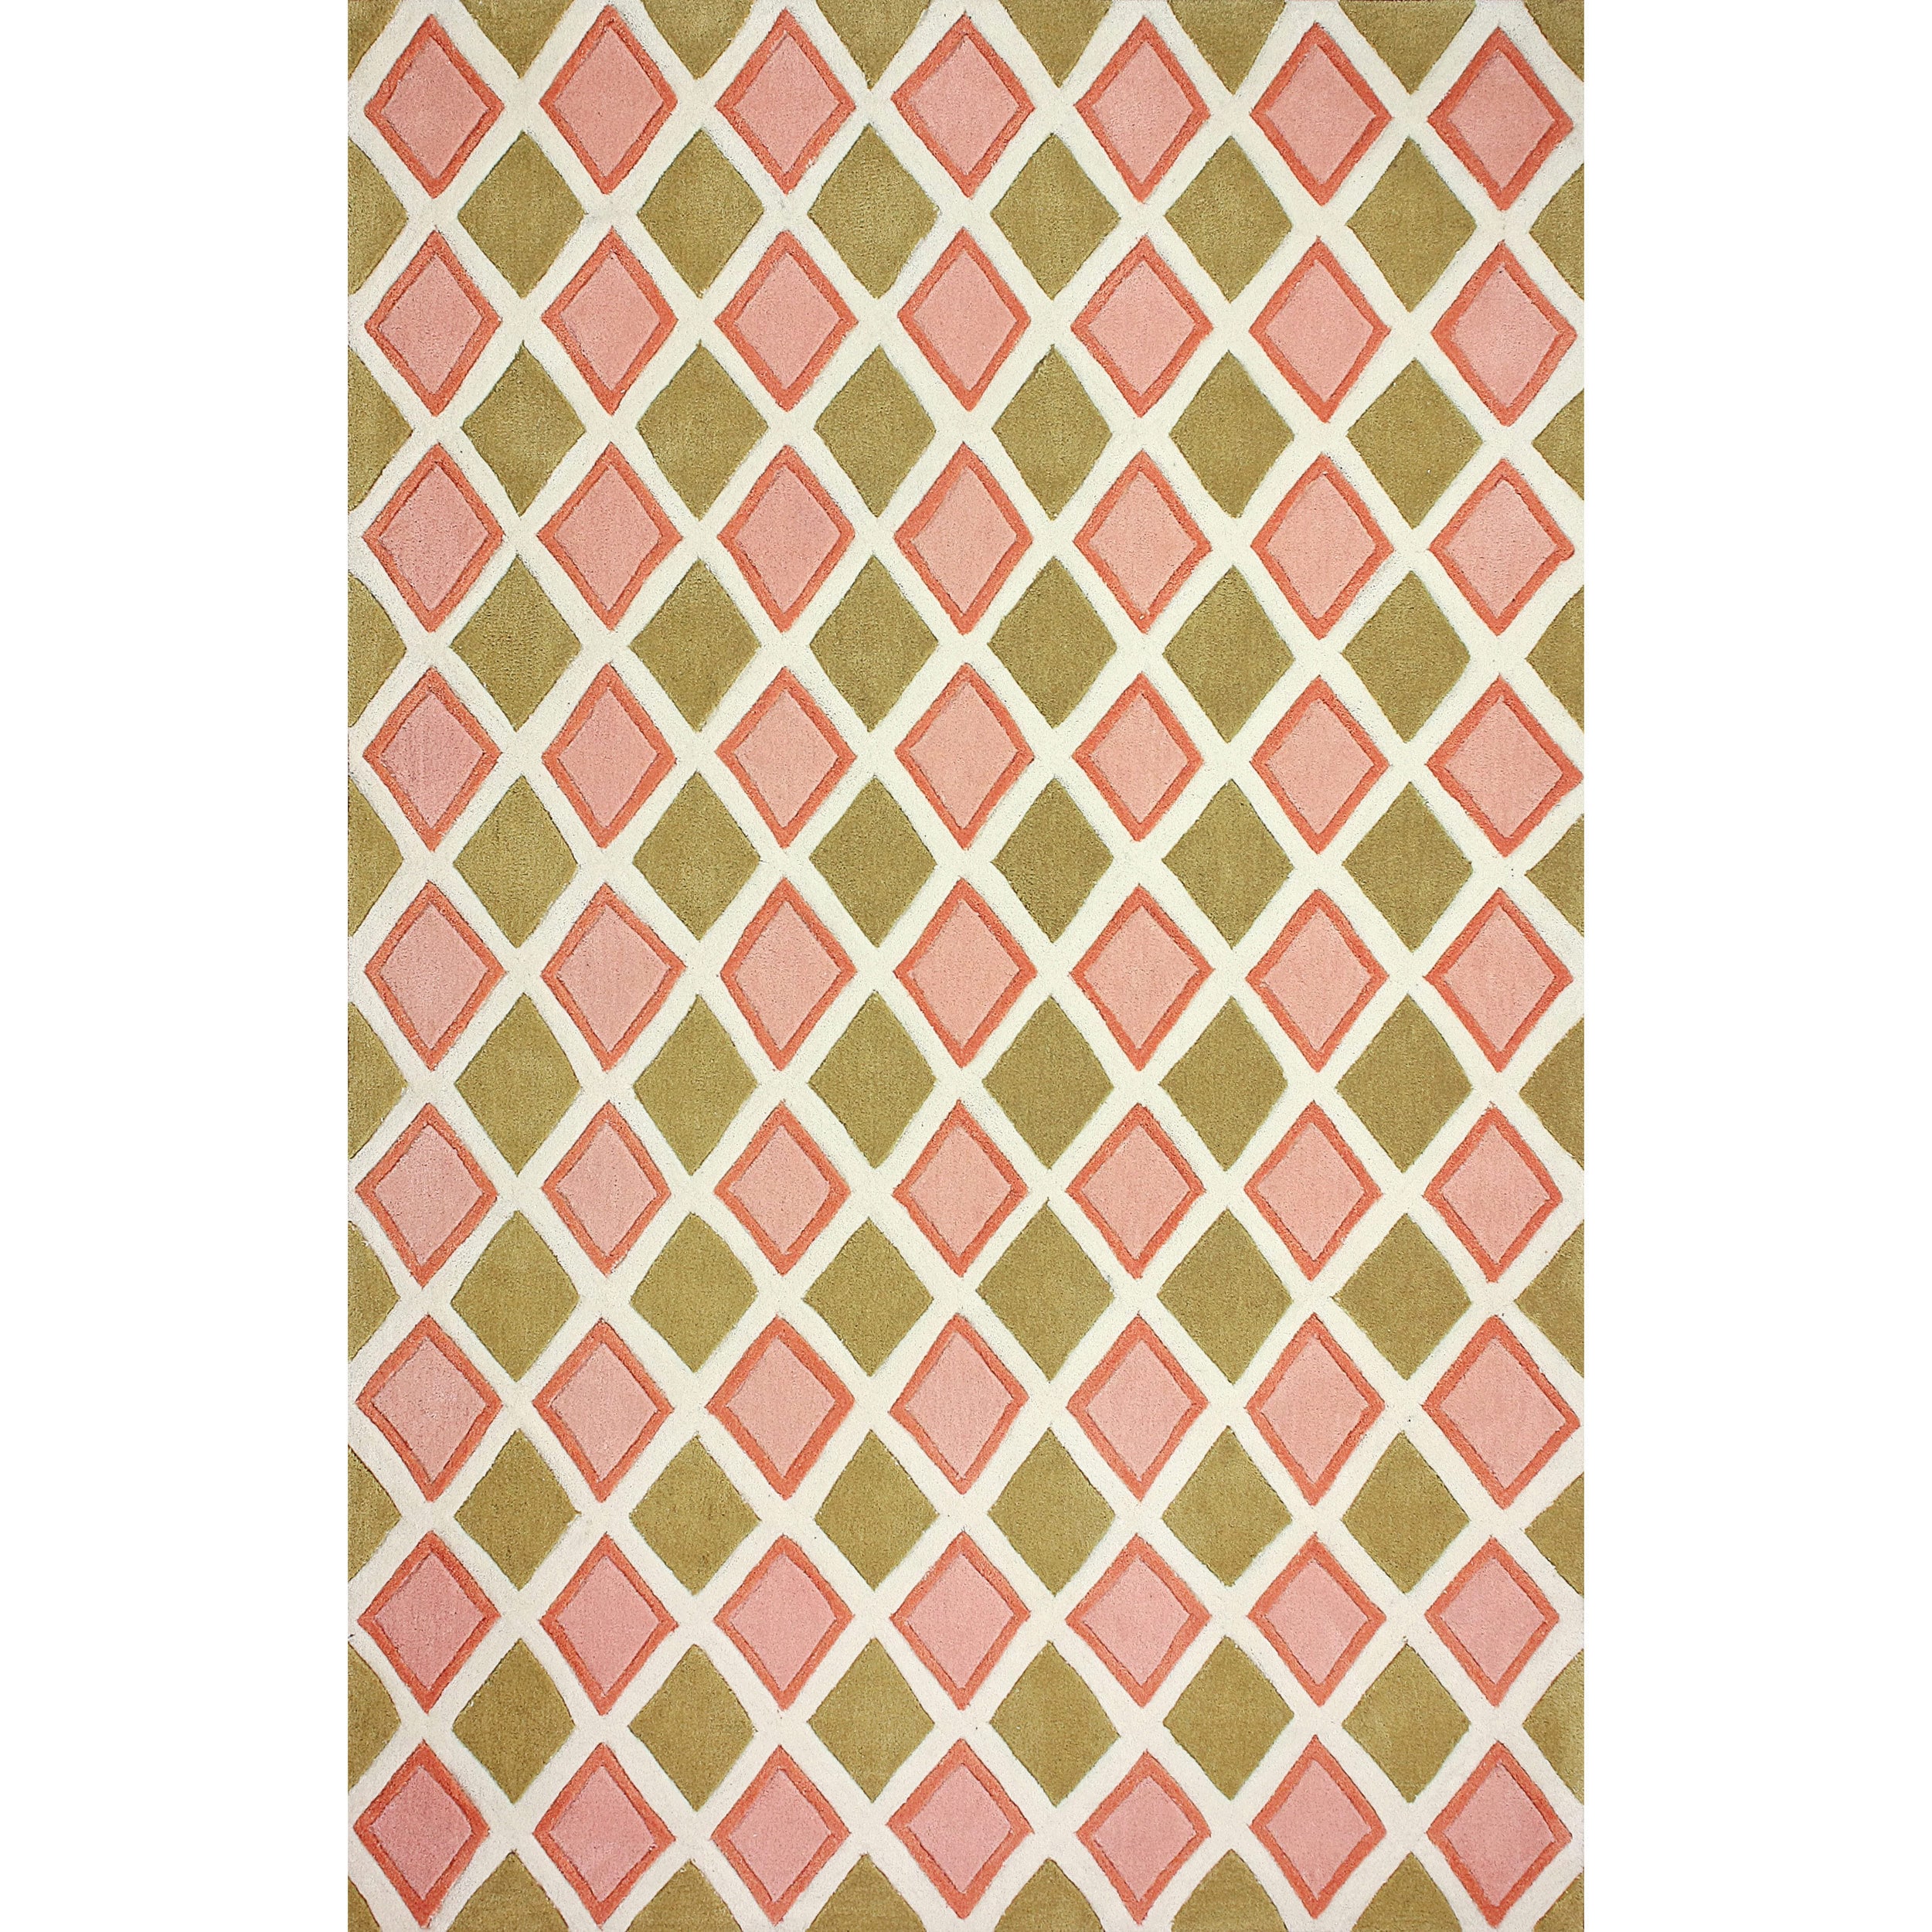 Nuloom Hand tufted Diamond Trellis Pink Rug (76 X 96)